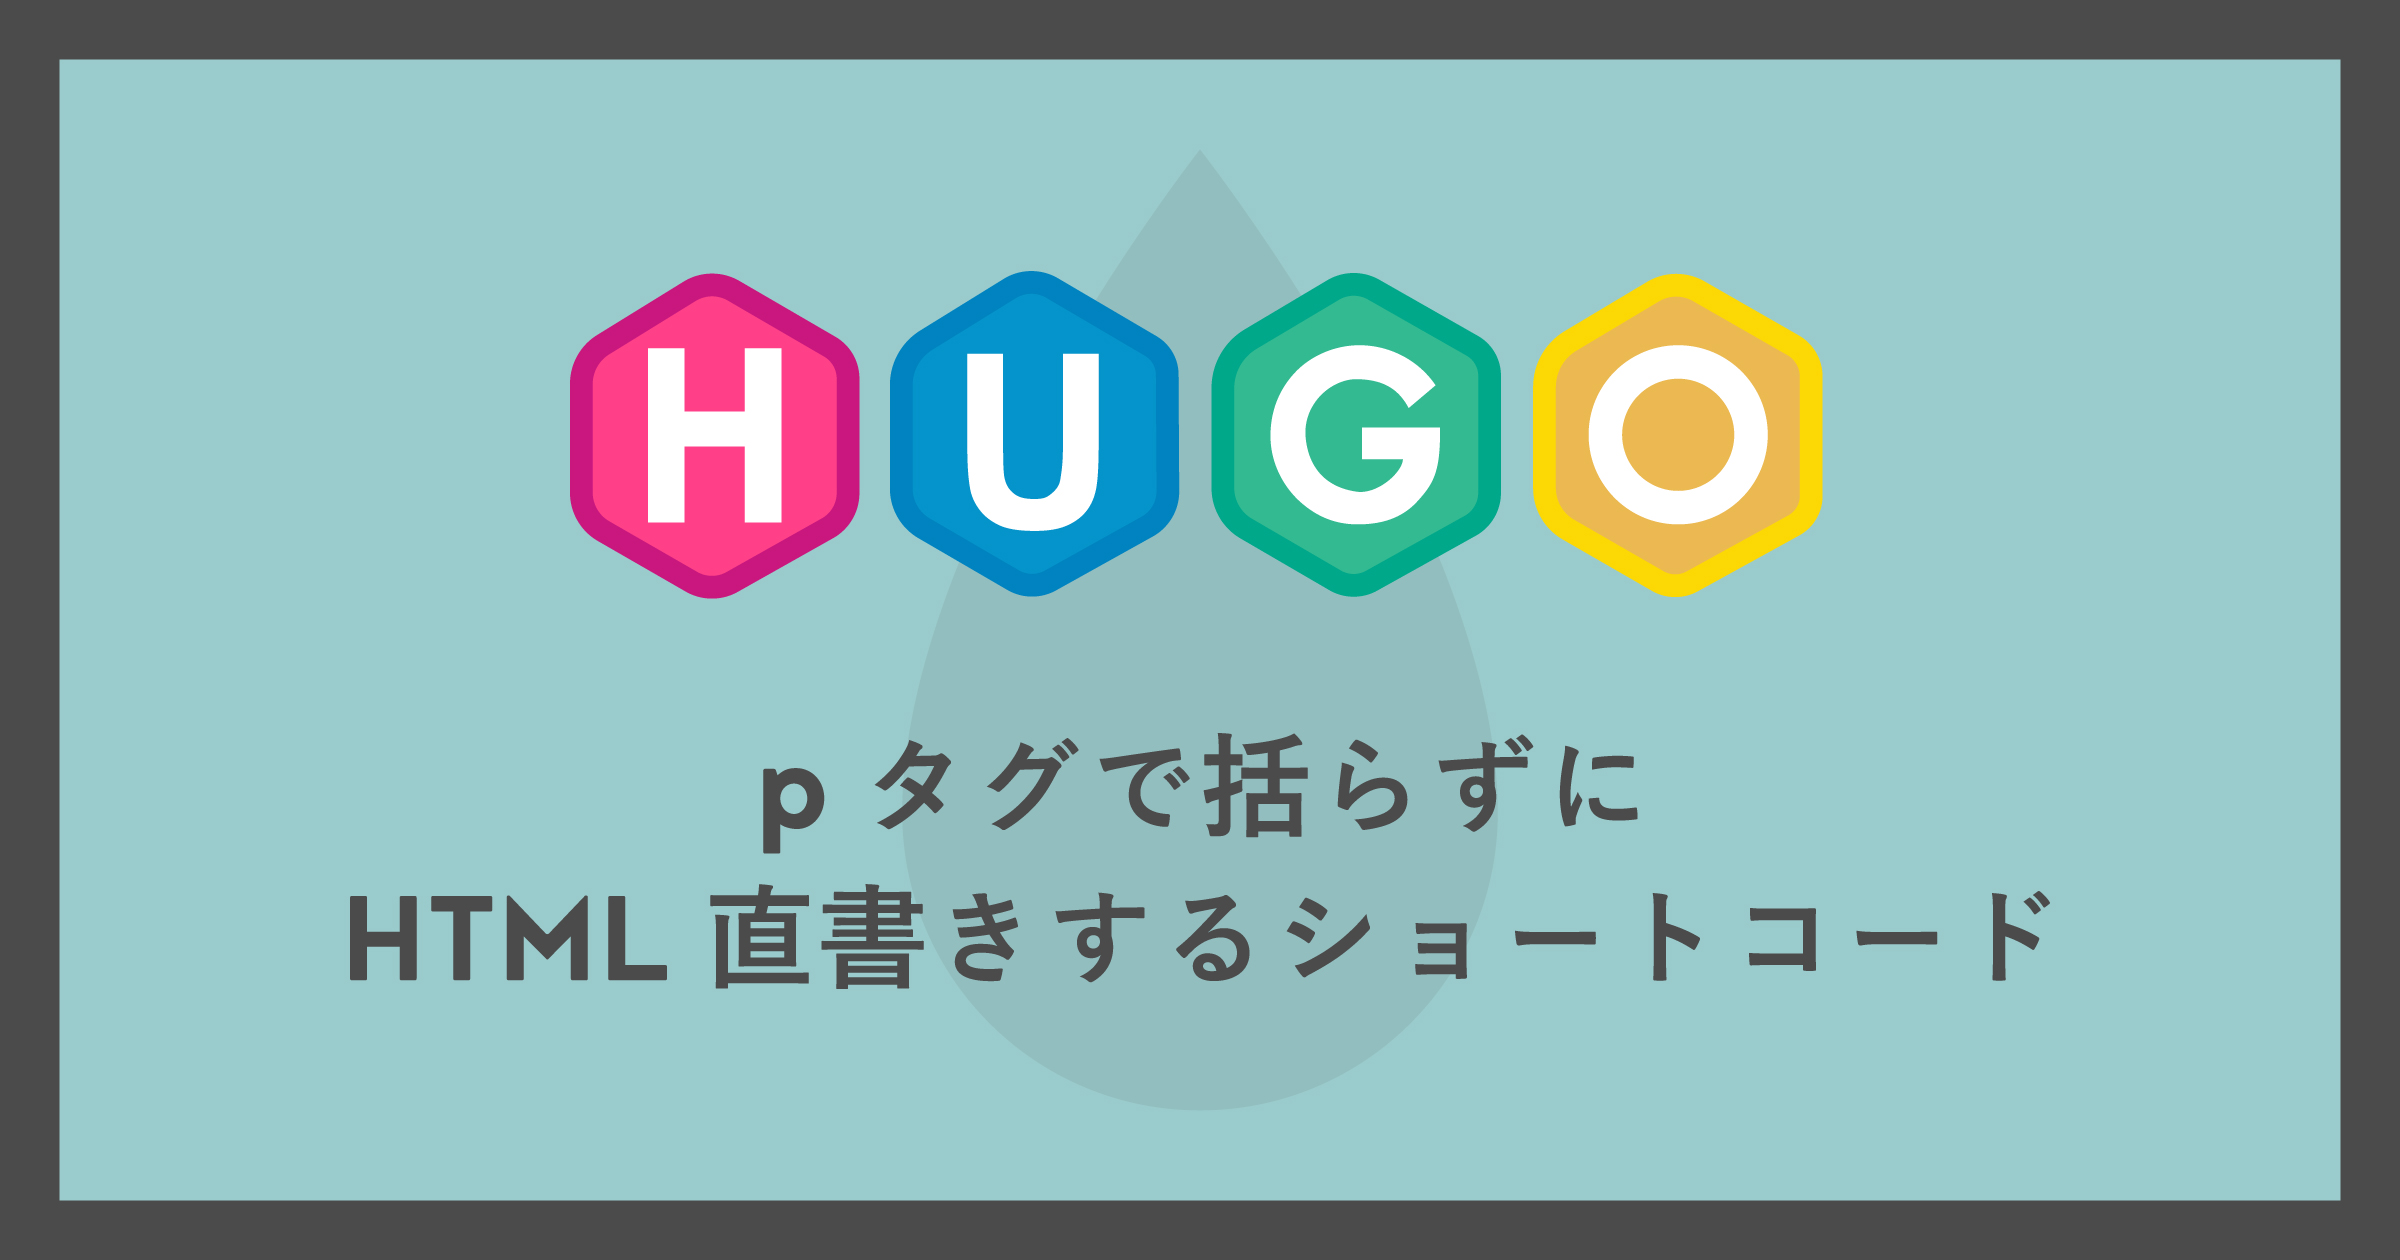 「[Hugo]pタグで括らずにHTML直書きするショートコード」のアイキャッチ画像